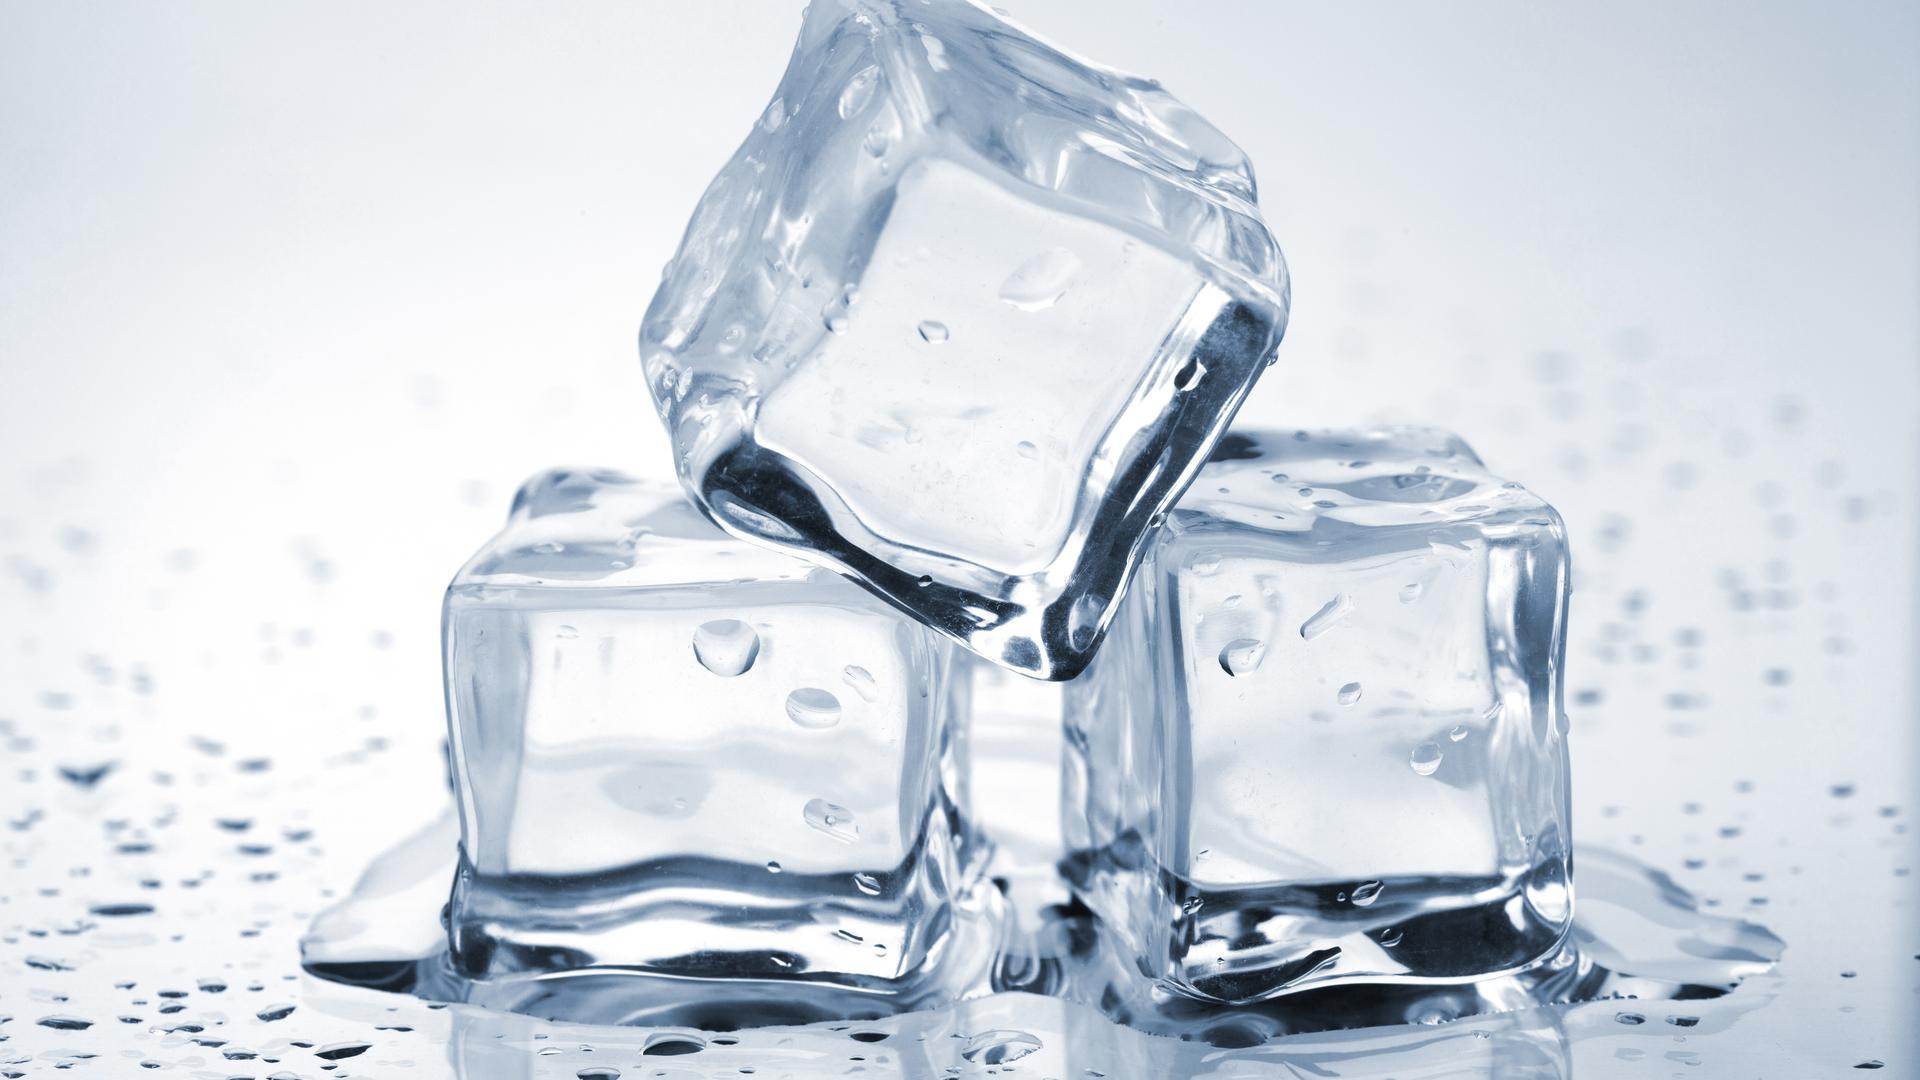 Grâce à de petites astuces, il est possible d’empêcher la glace de fondre trop rapidement. ©&nbsp;Evgeny Karandaev, Shutterstock